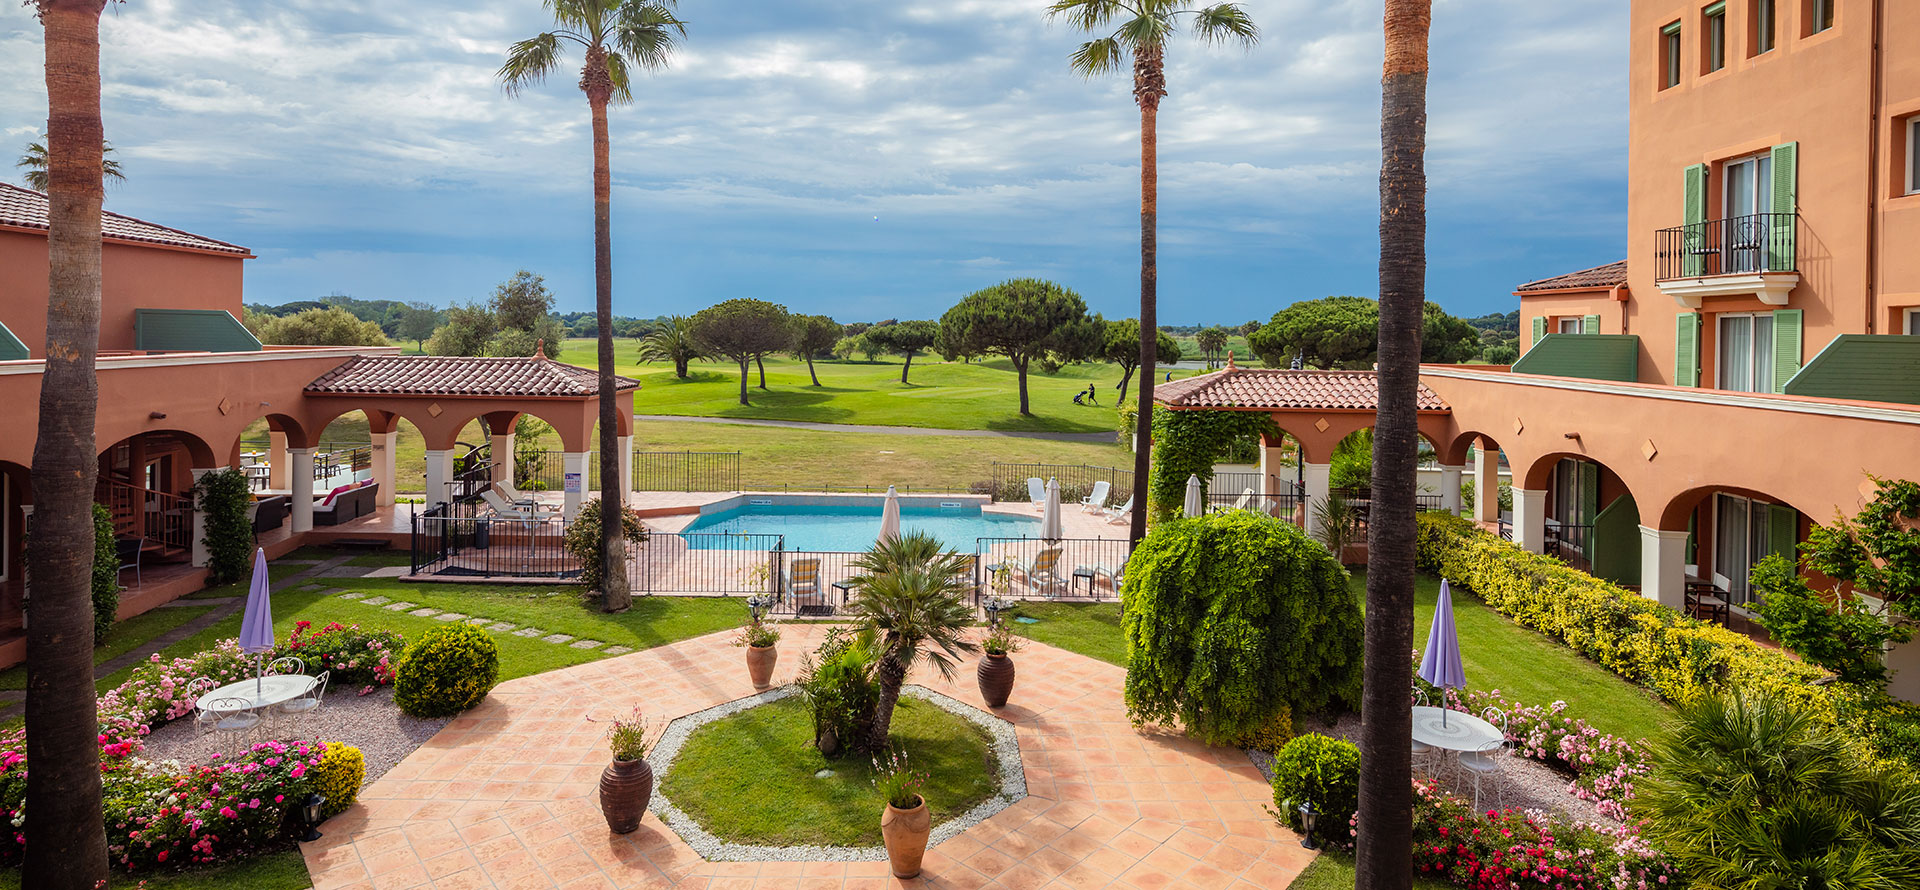 Vista desde la terraza privada de la habitación Golf Vista del Palmyra Golf, la piscina, el campo de golf y el jardín. Palmyra Golf, hotel de 4 estrellas en Cap d'Agde